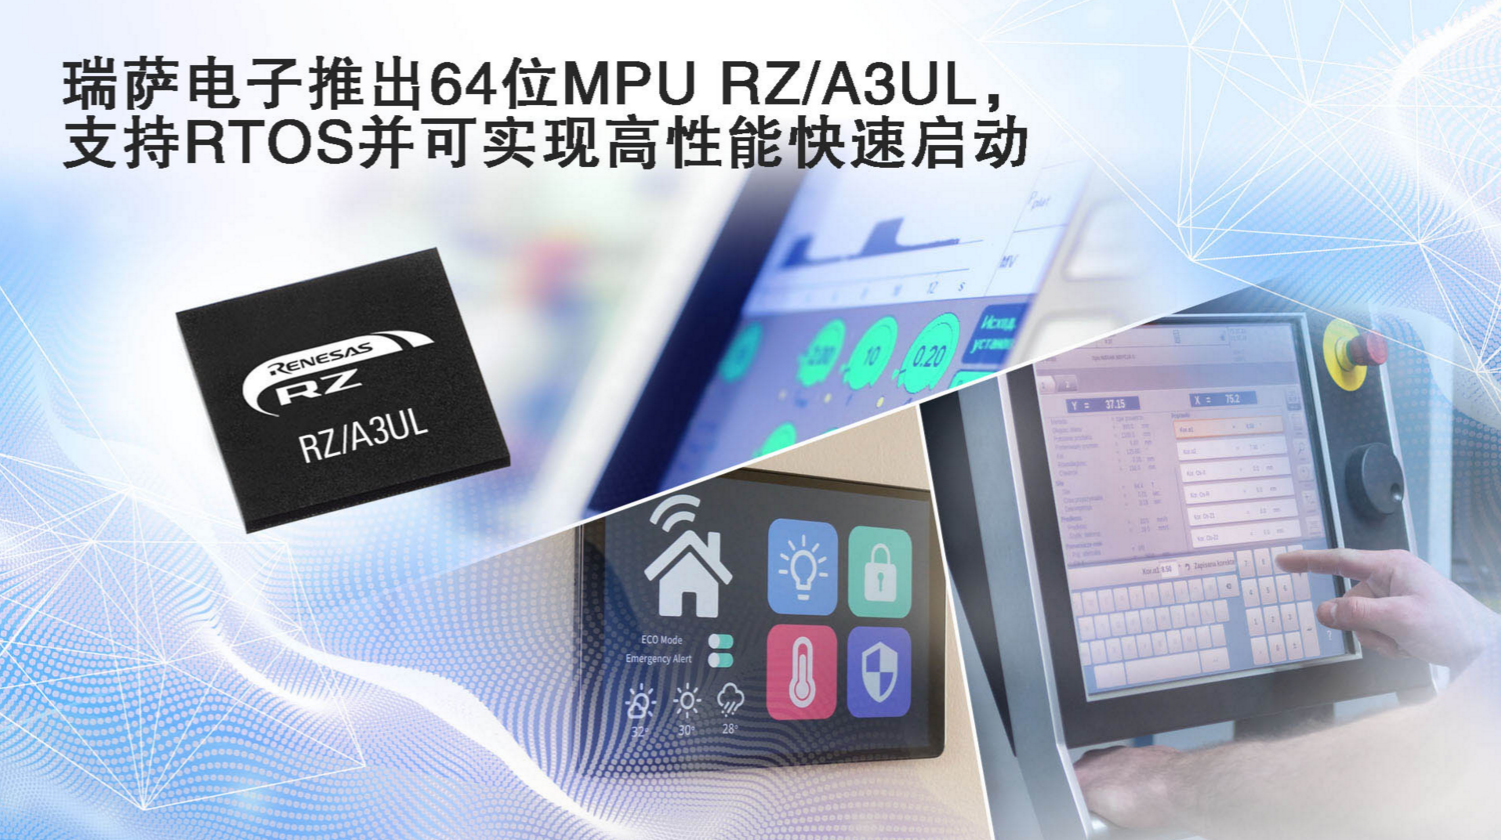 瑞萨电子推出功能强大的RZ/A3UL MPU，支持RTOS并可实现高清HMI和快速启动